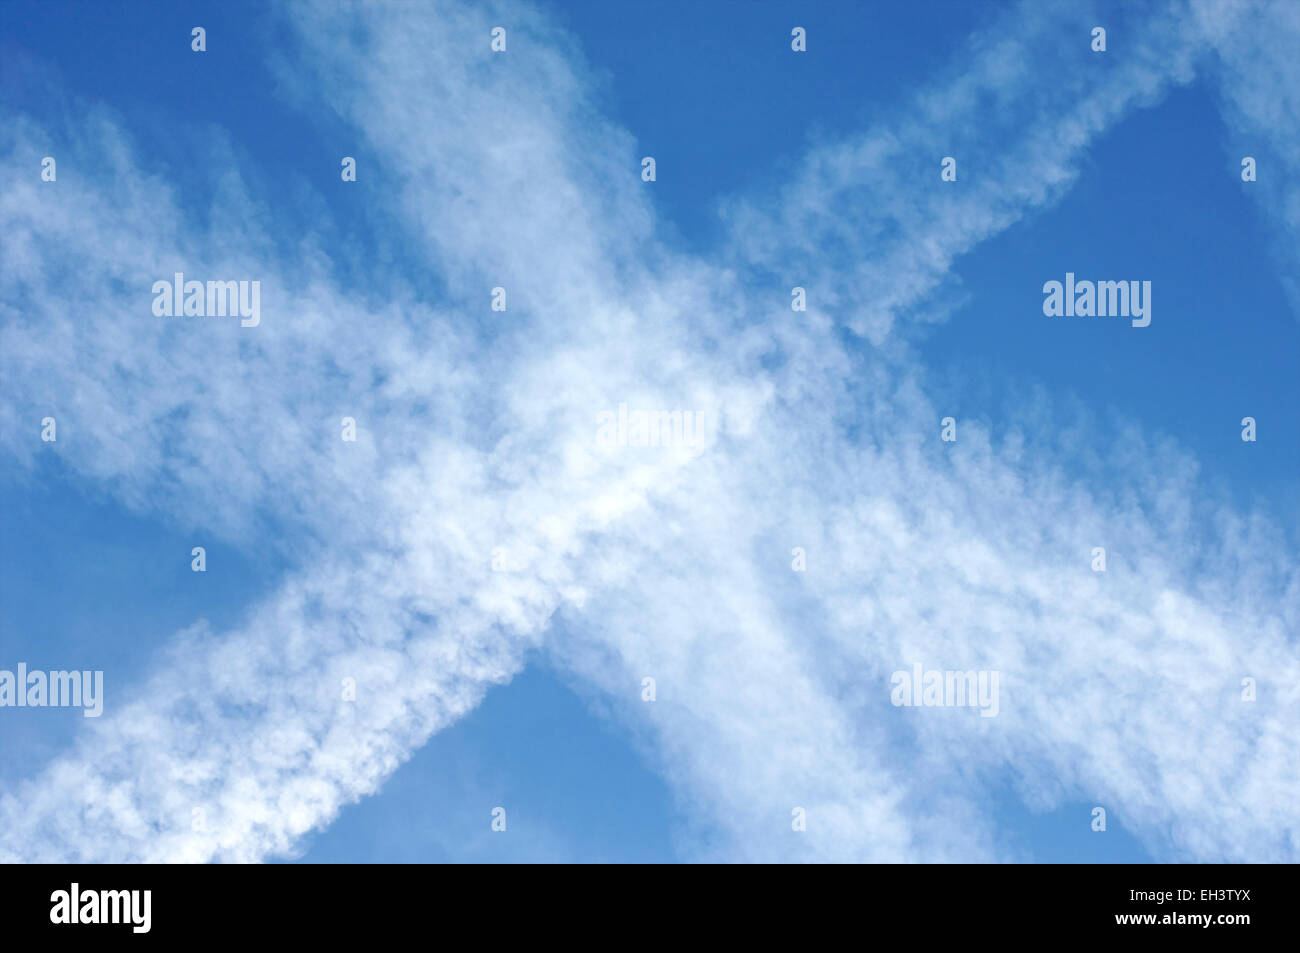 Ciel bleu avec des chemtrails laissées par les avions dans l'air couvrant un ciel bleu avec des nuages artificiels contenant des métaux toxiques et des produits chimiques Banque D'Images